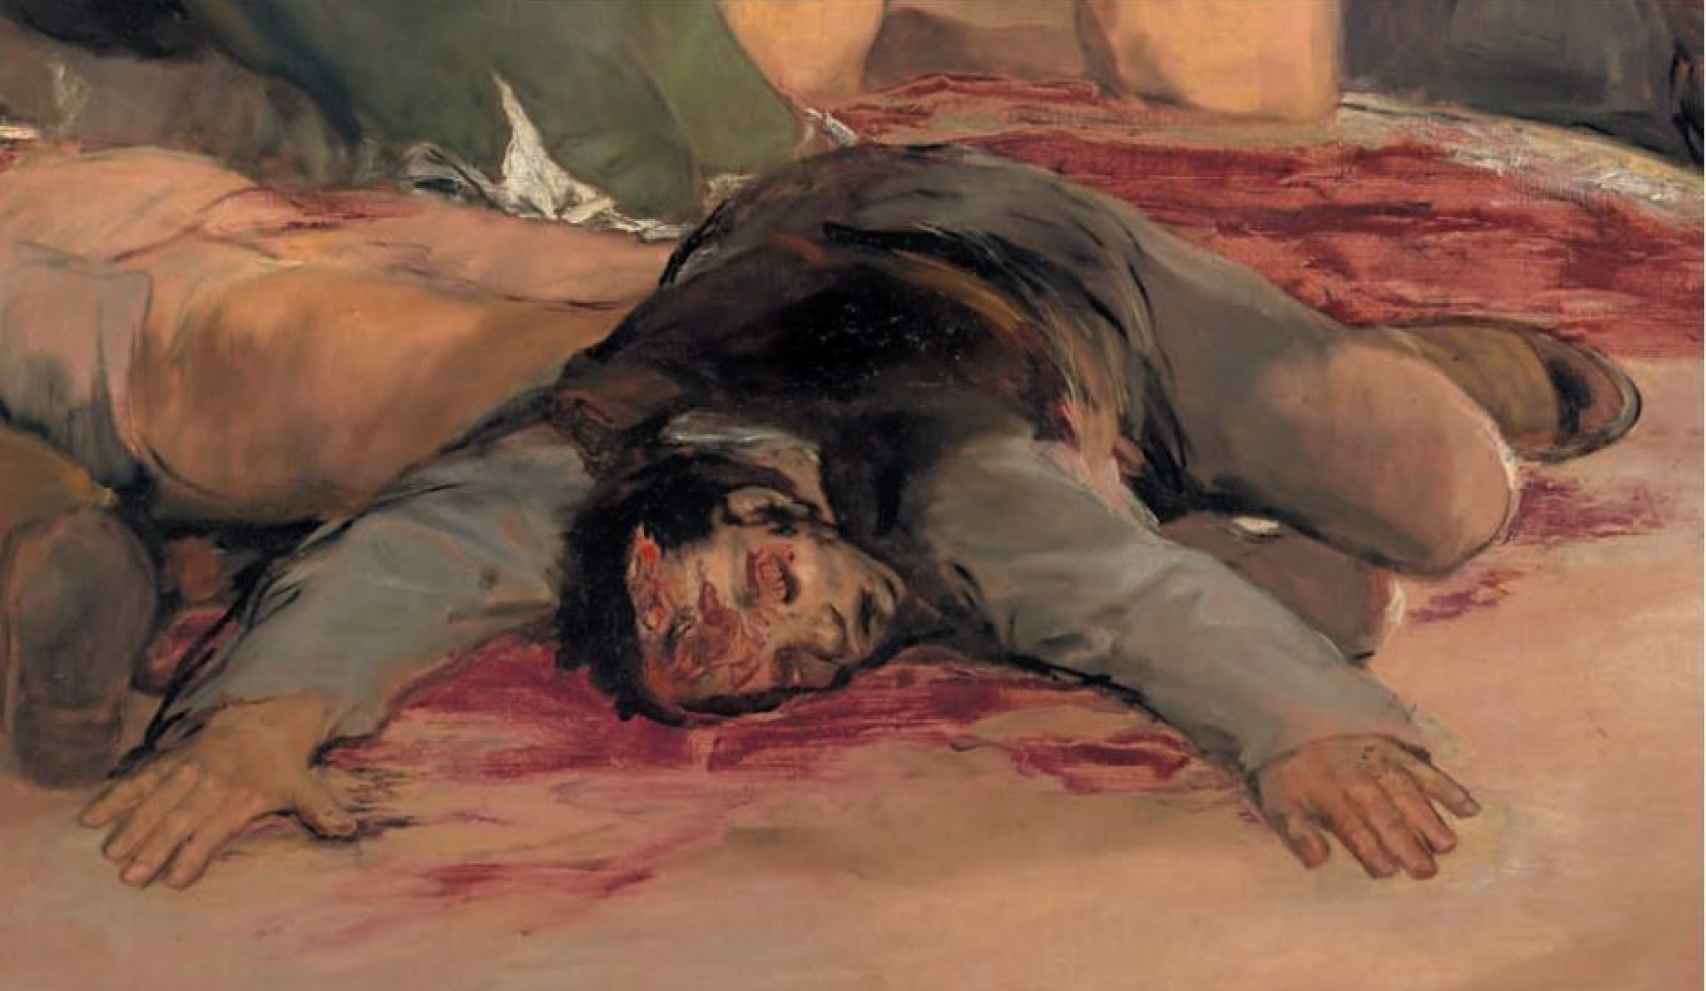 El cadáver en primer plano del cuadro del Dos de mayo.